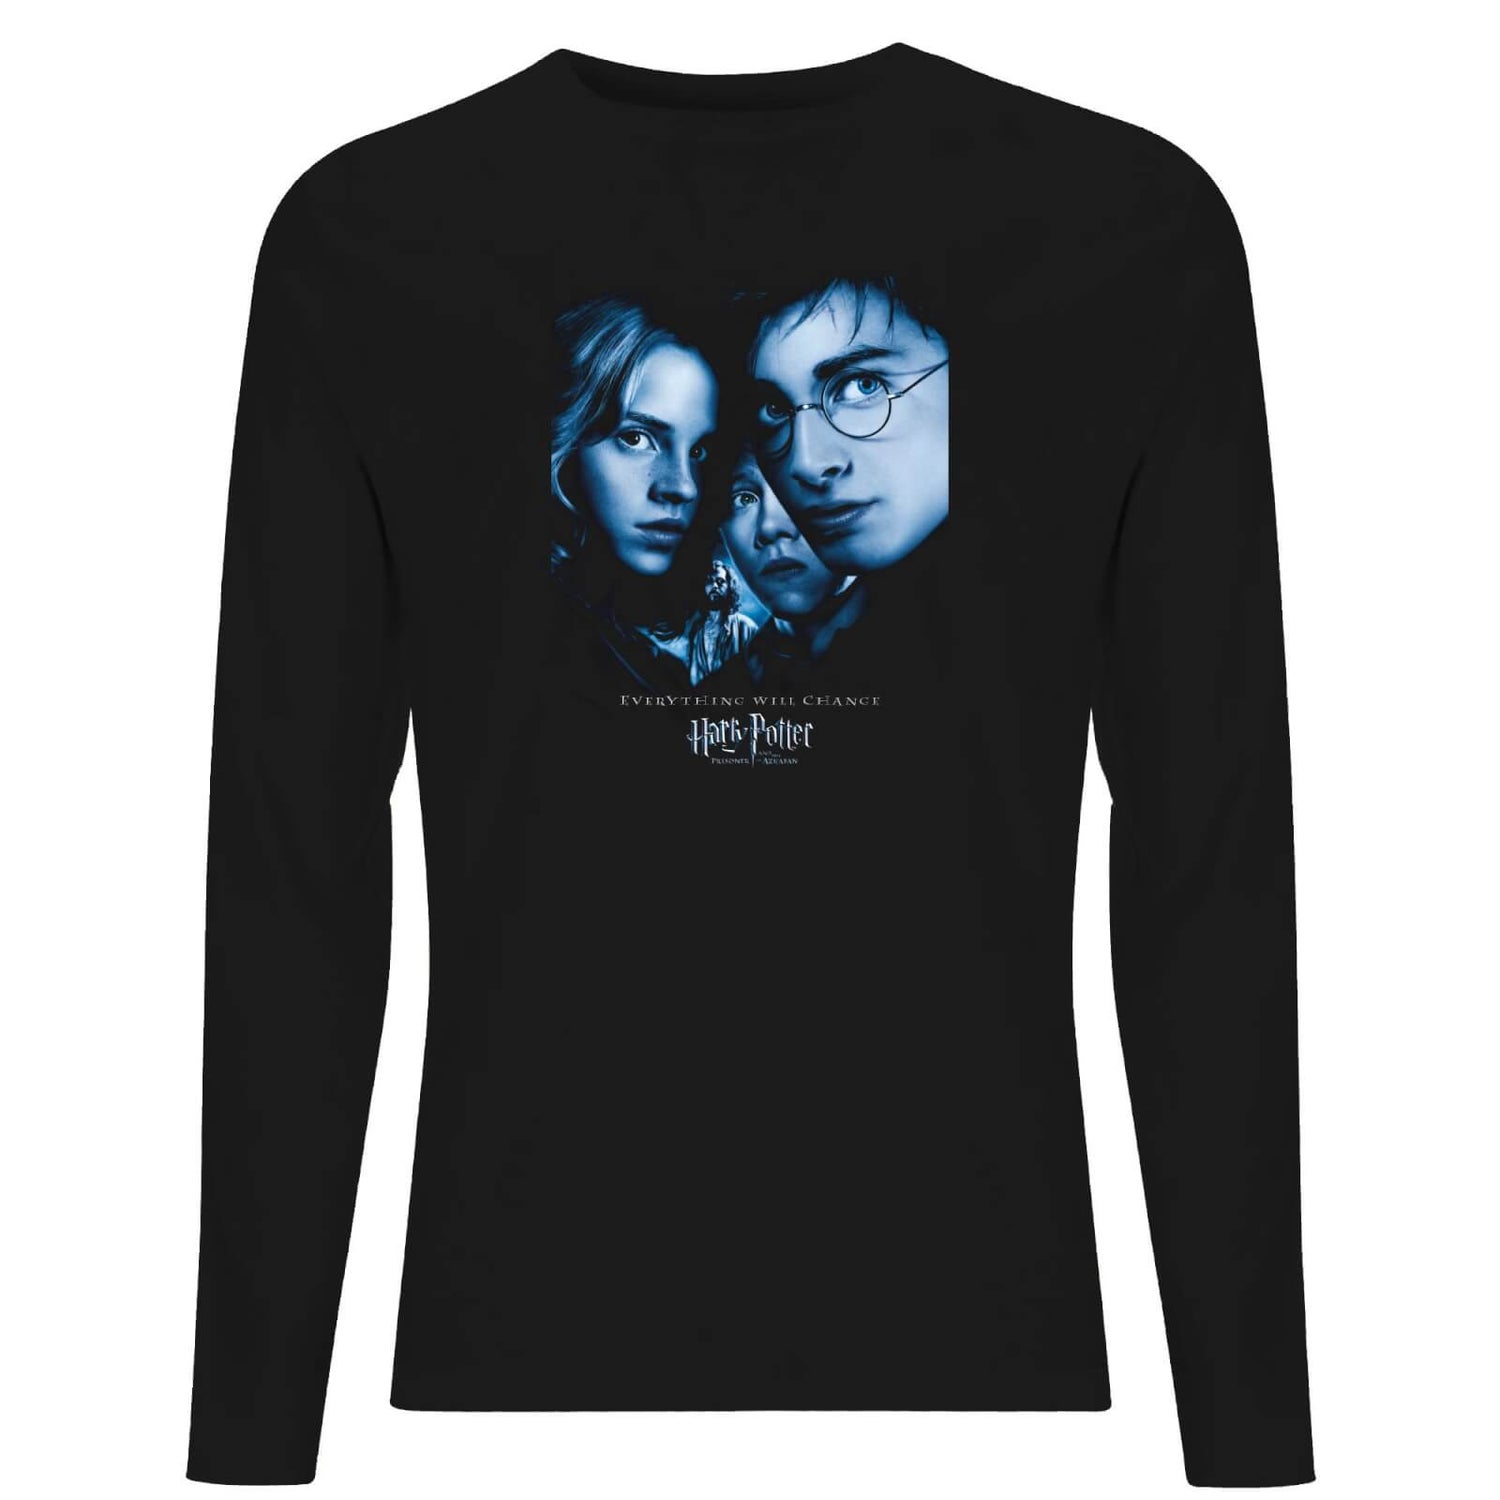 Harry Potter Prisoner Of Azkaban Unisex Long Sleeve T-Shirt - Black